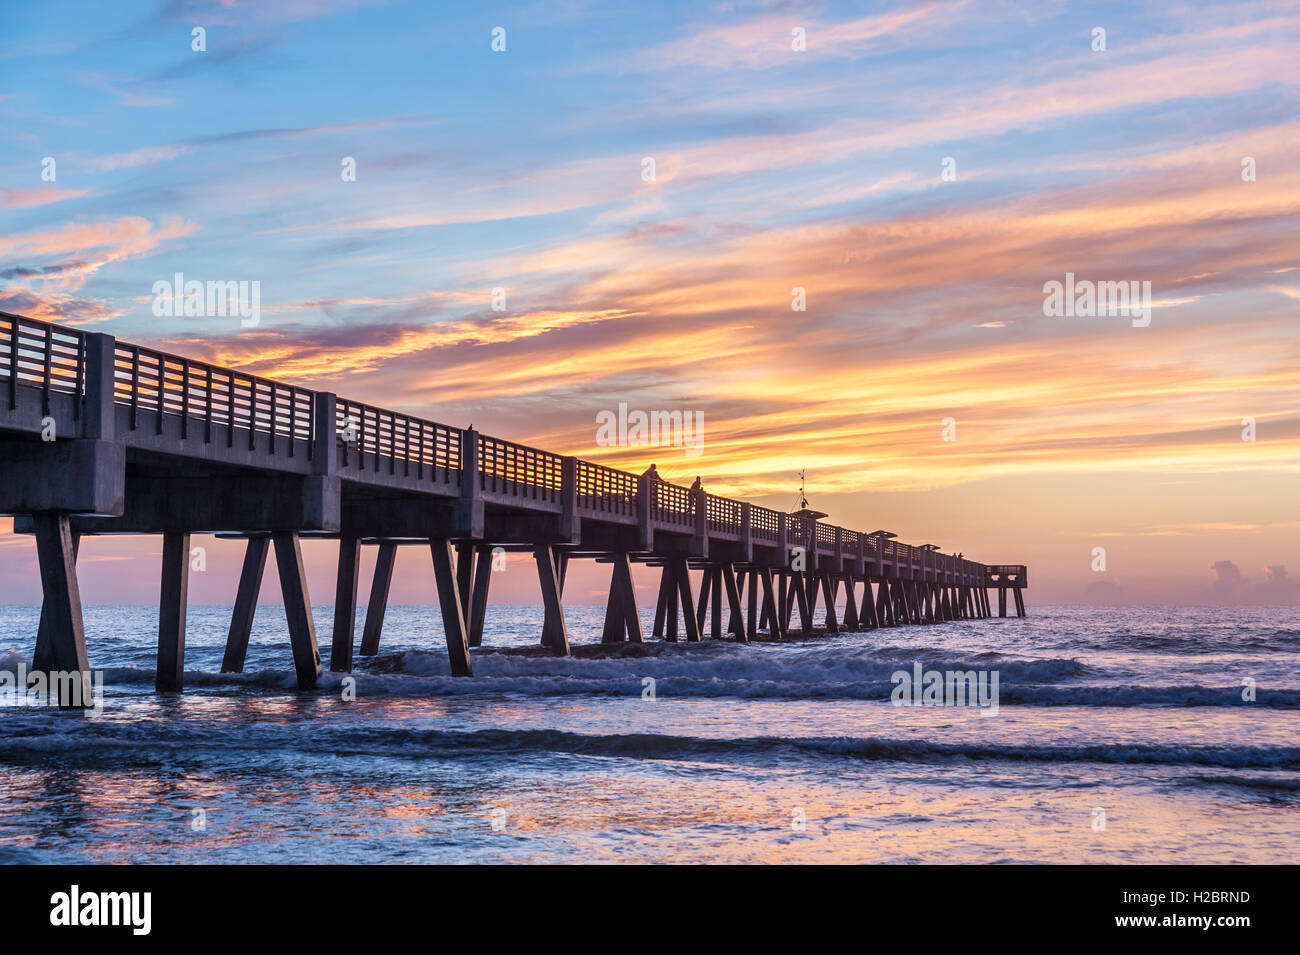 Ein schöner Sonnenaufgang malt den Himmel und das Meer mit lebendigen Farben an der Jacksonville Beach Pier im Nordosten Floridas. (USA) Stockfoto